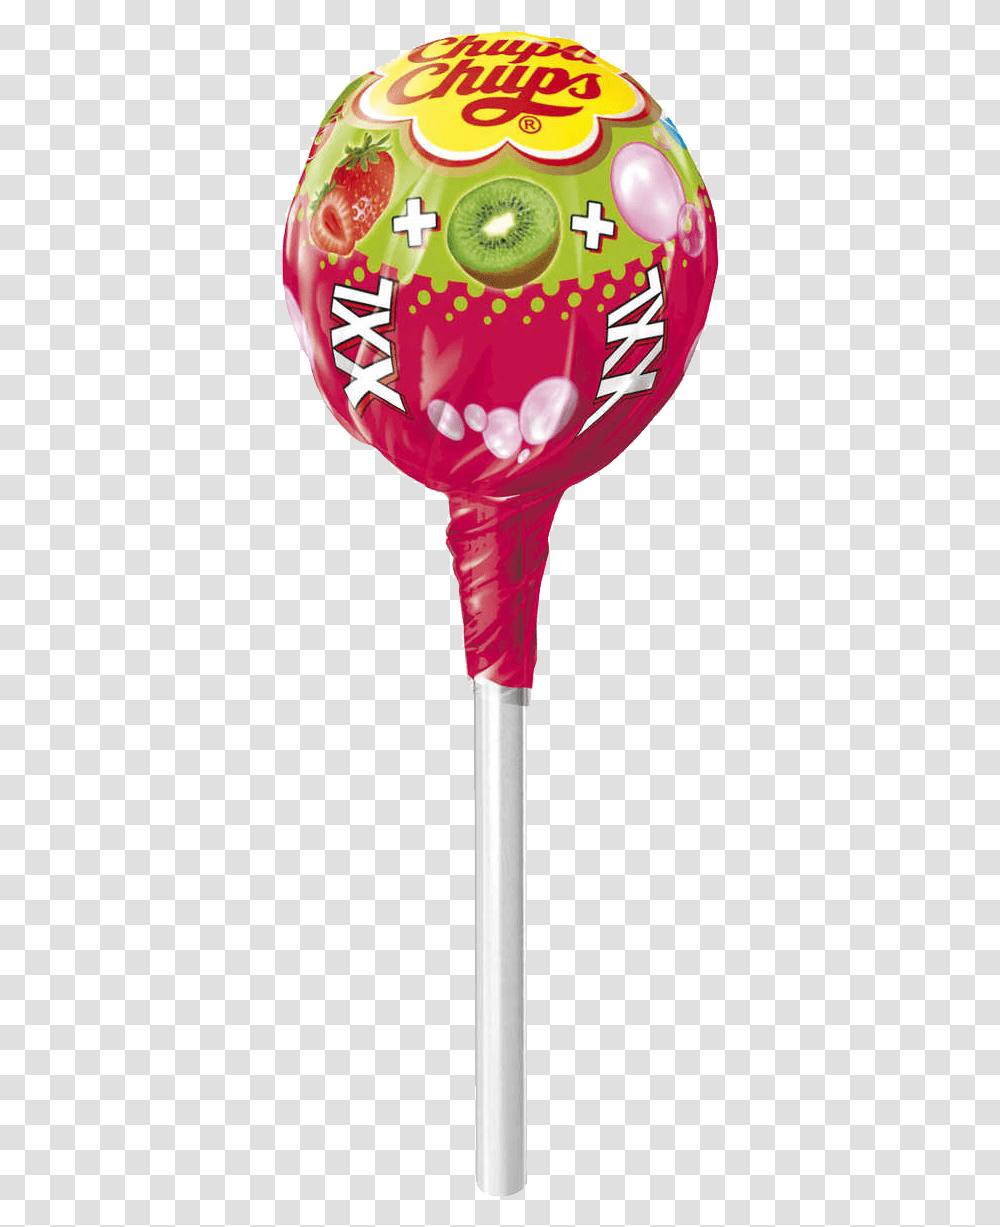 Lollipop, Food, Ball, Balloon, Glass Transparent Png